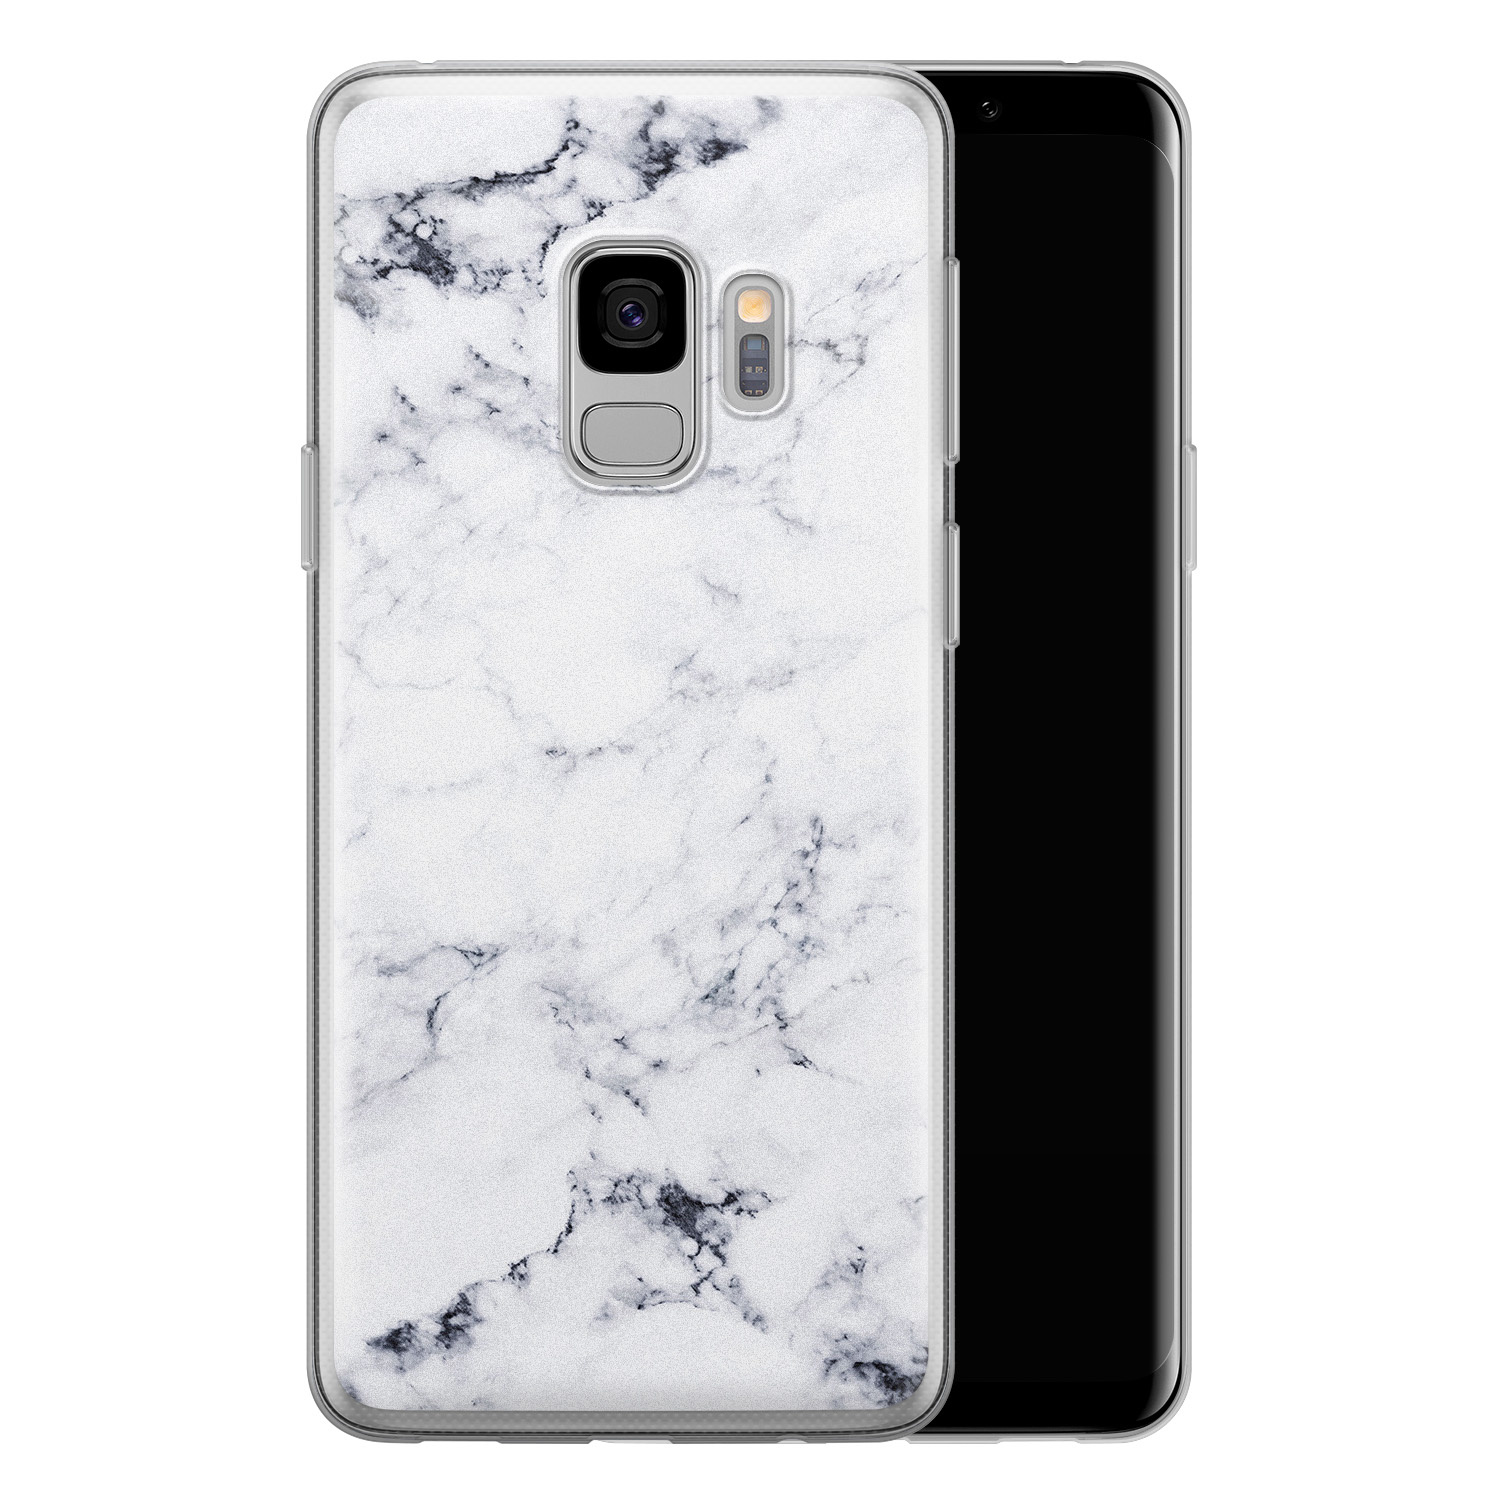 Leuke Telefoonhoesjes Samsung Galaxy S9 siliconen hoesje - Marmer grijs